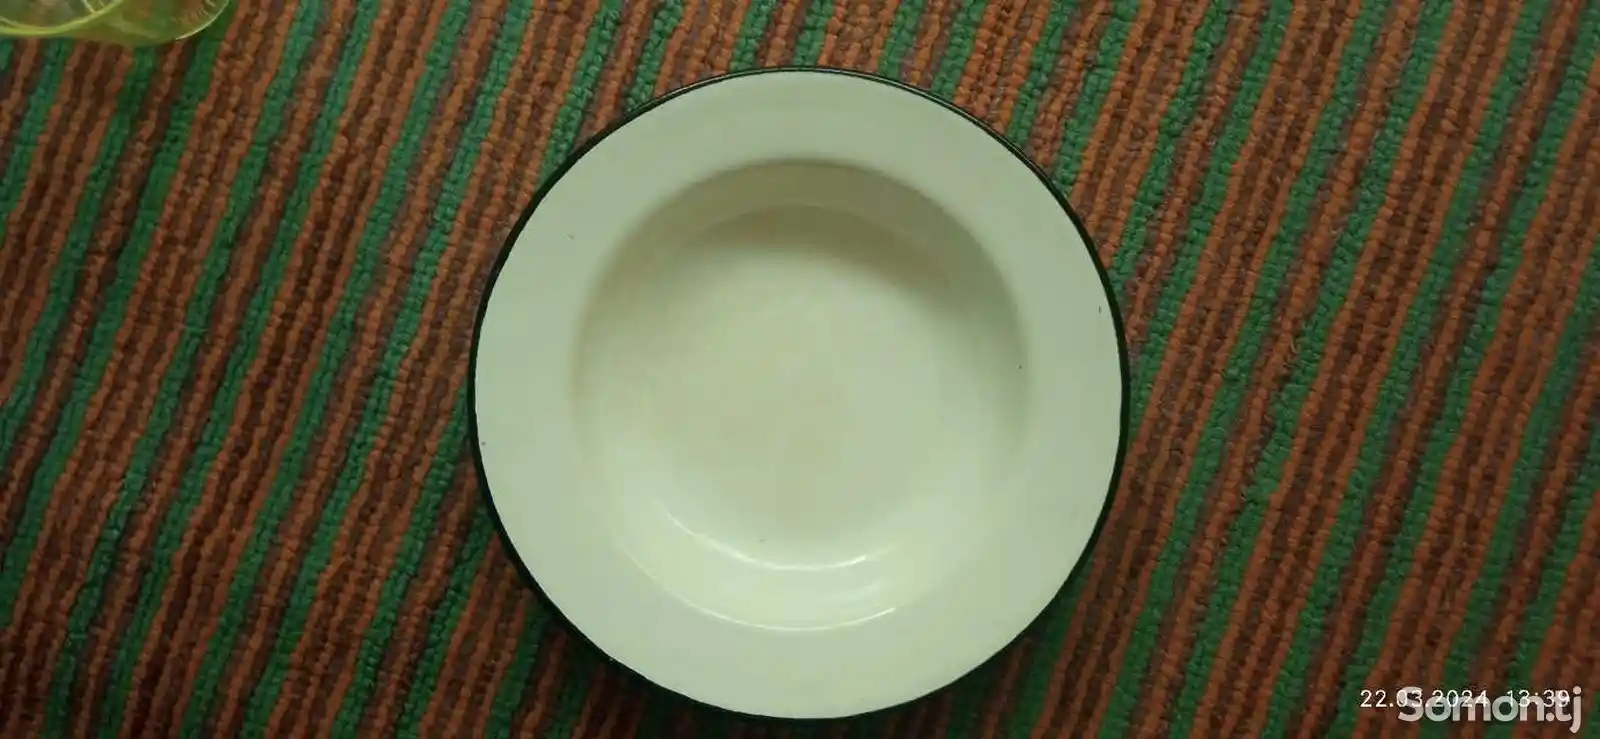 Эмалированная тарелка